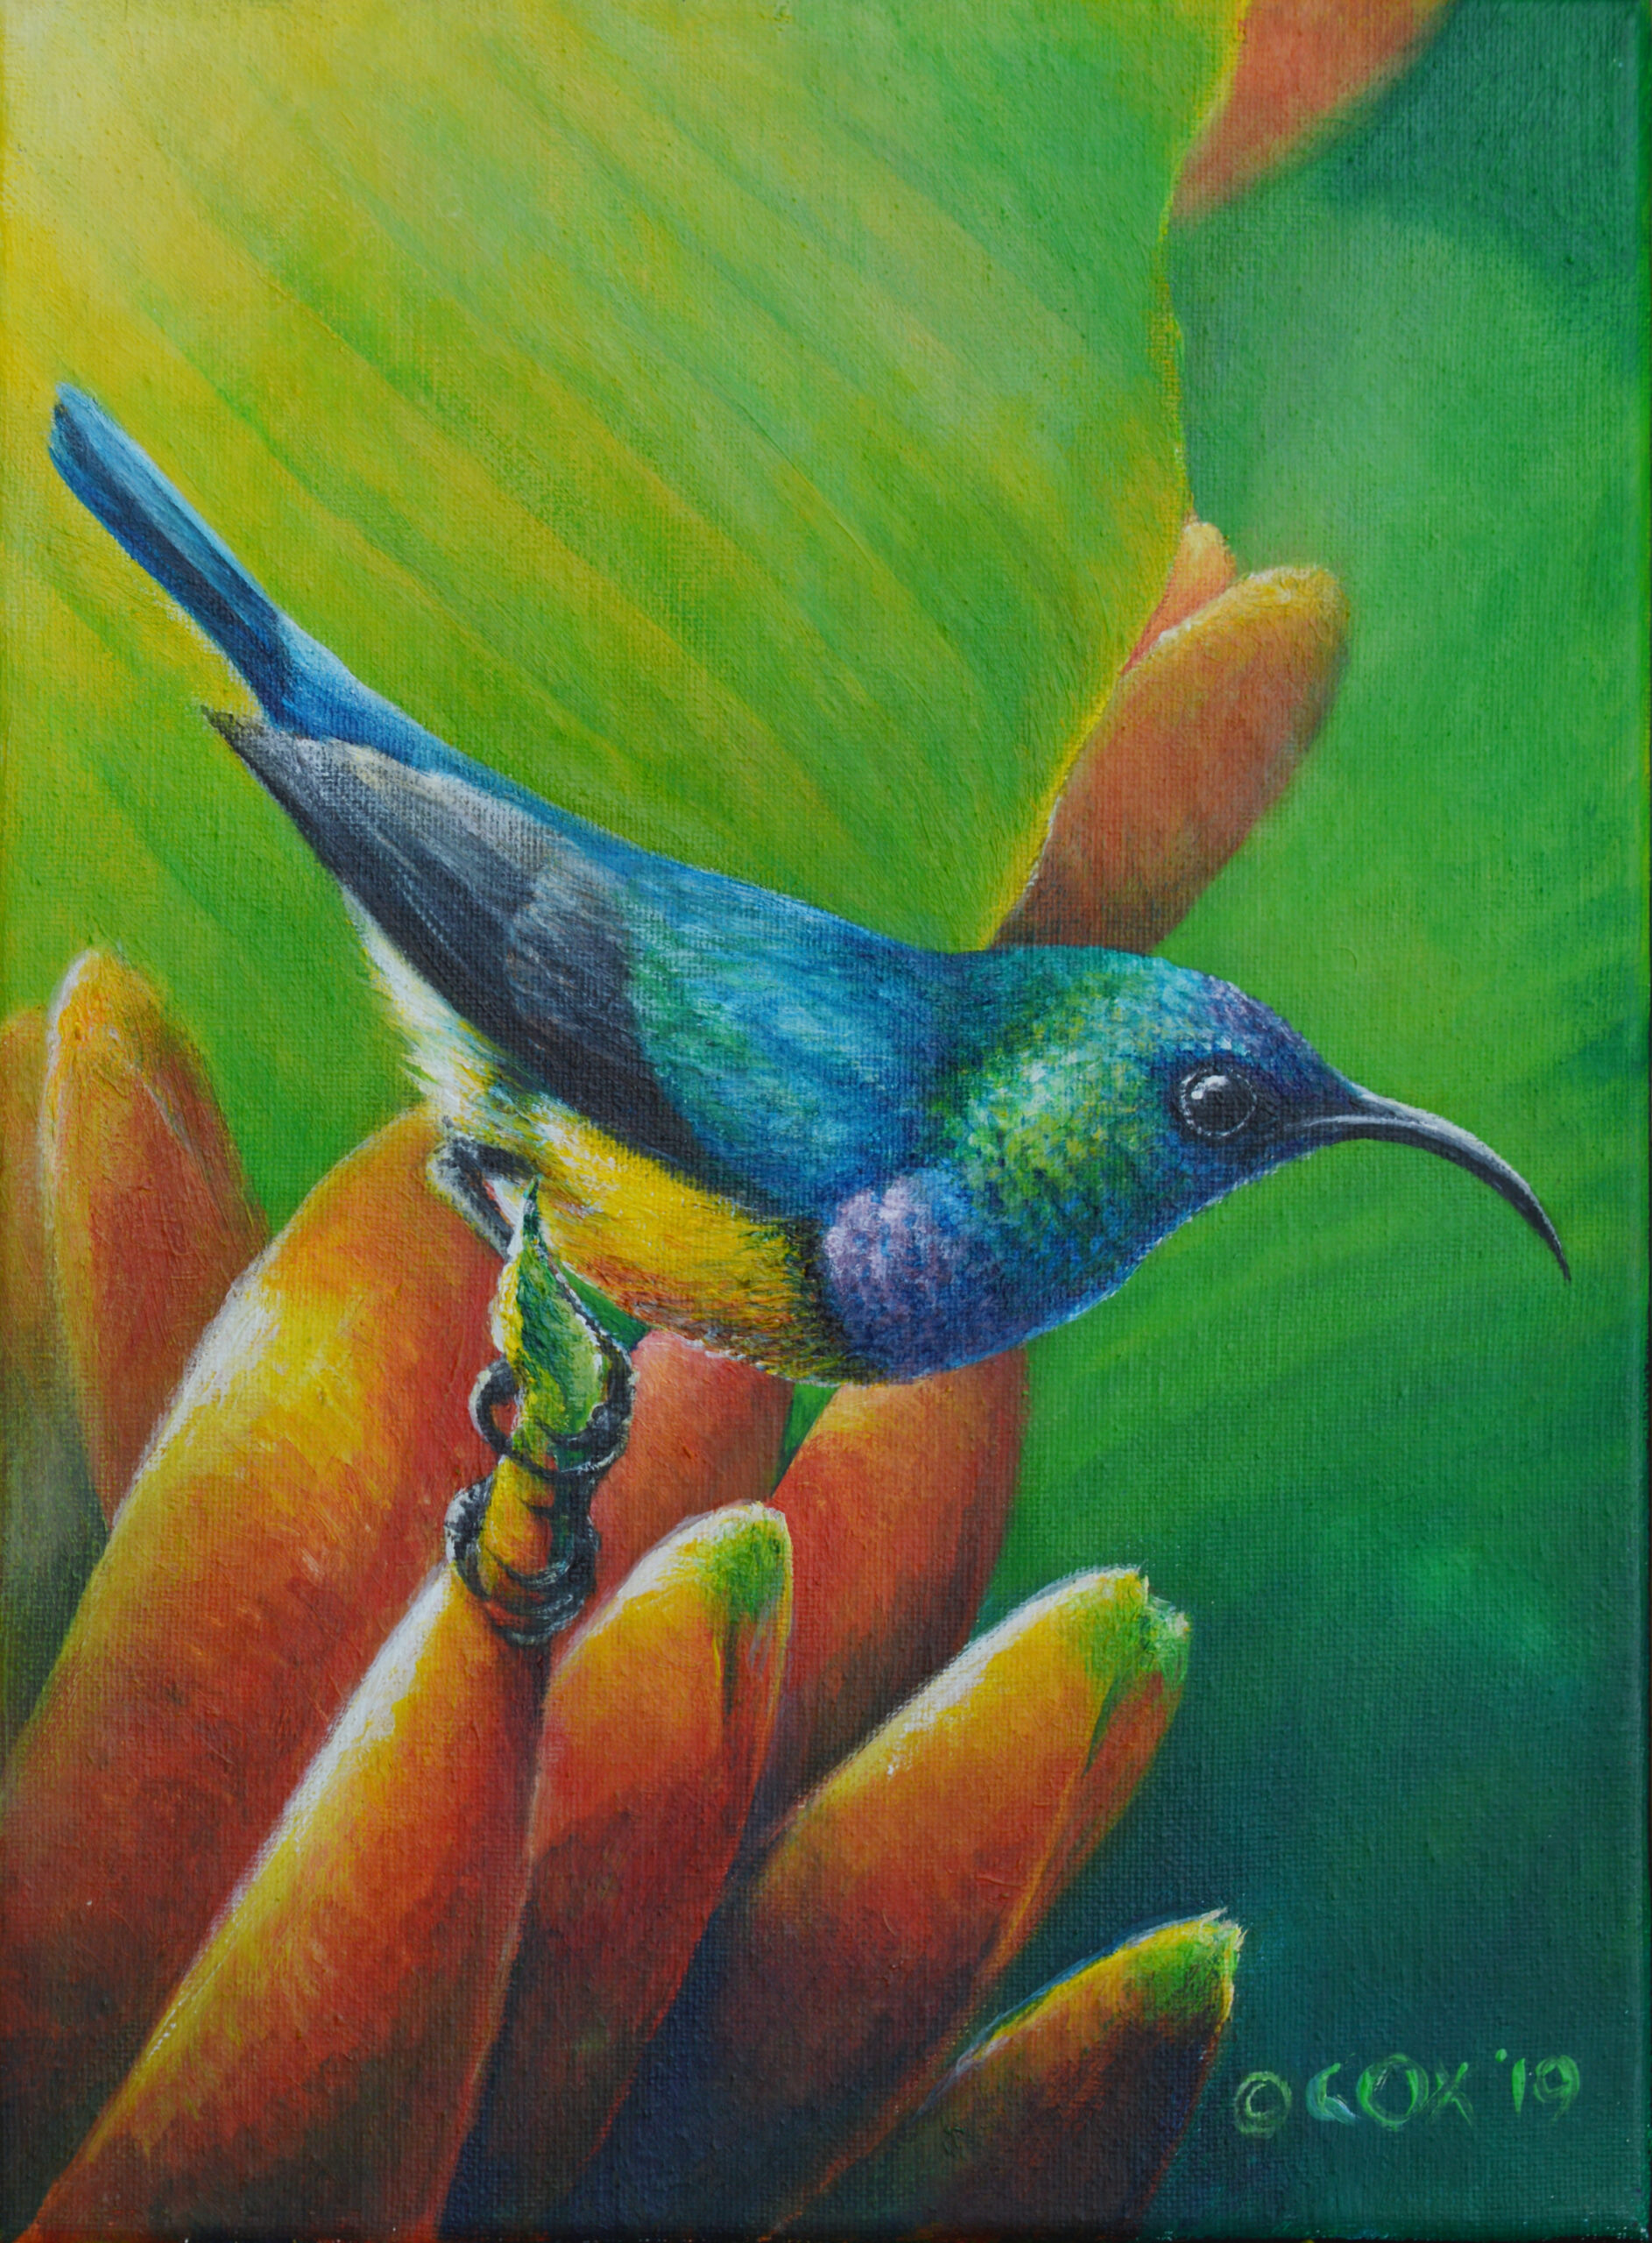 Variable Sunbird, Acrylic on canvas 9x12"